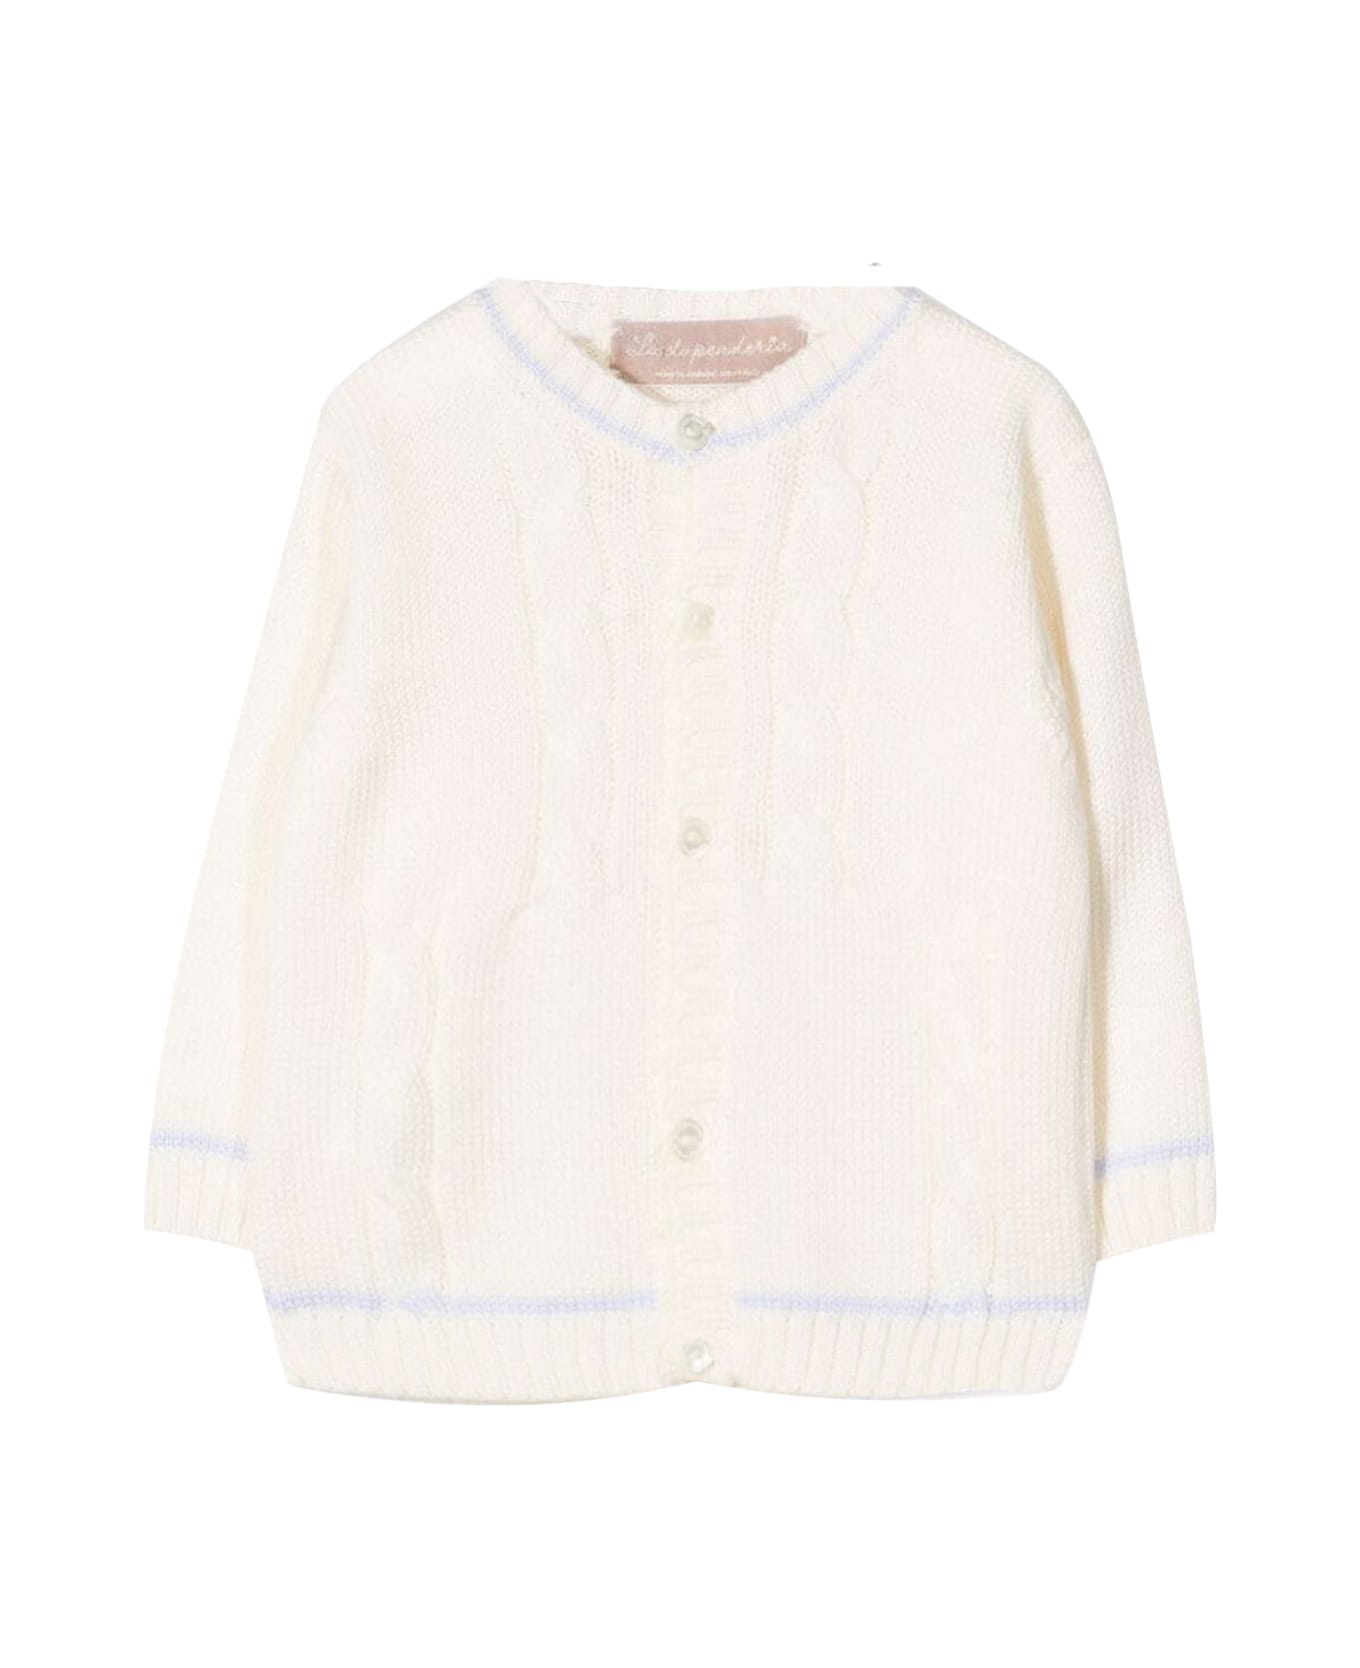 La stupenderia Cashmere Sweater - White